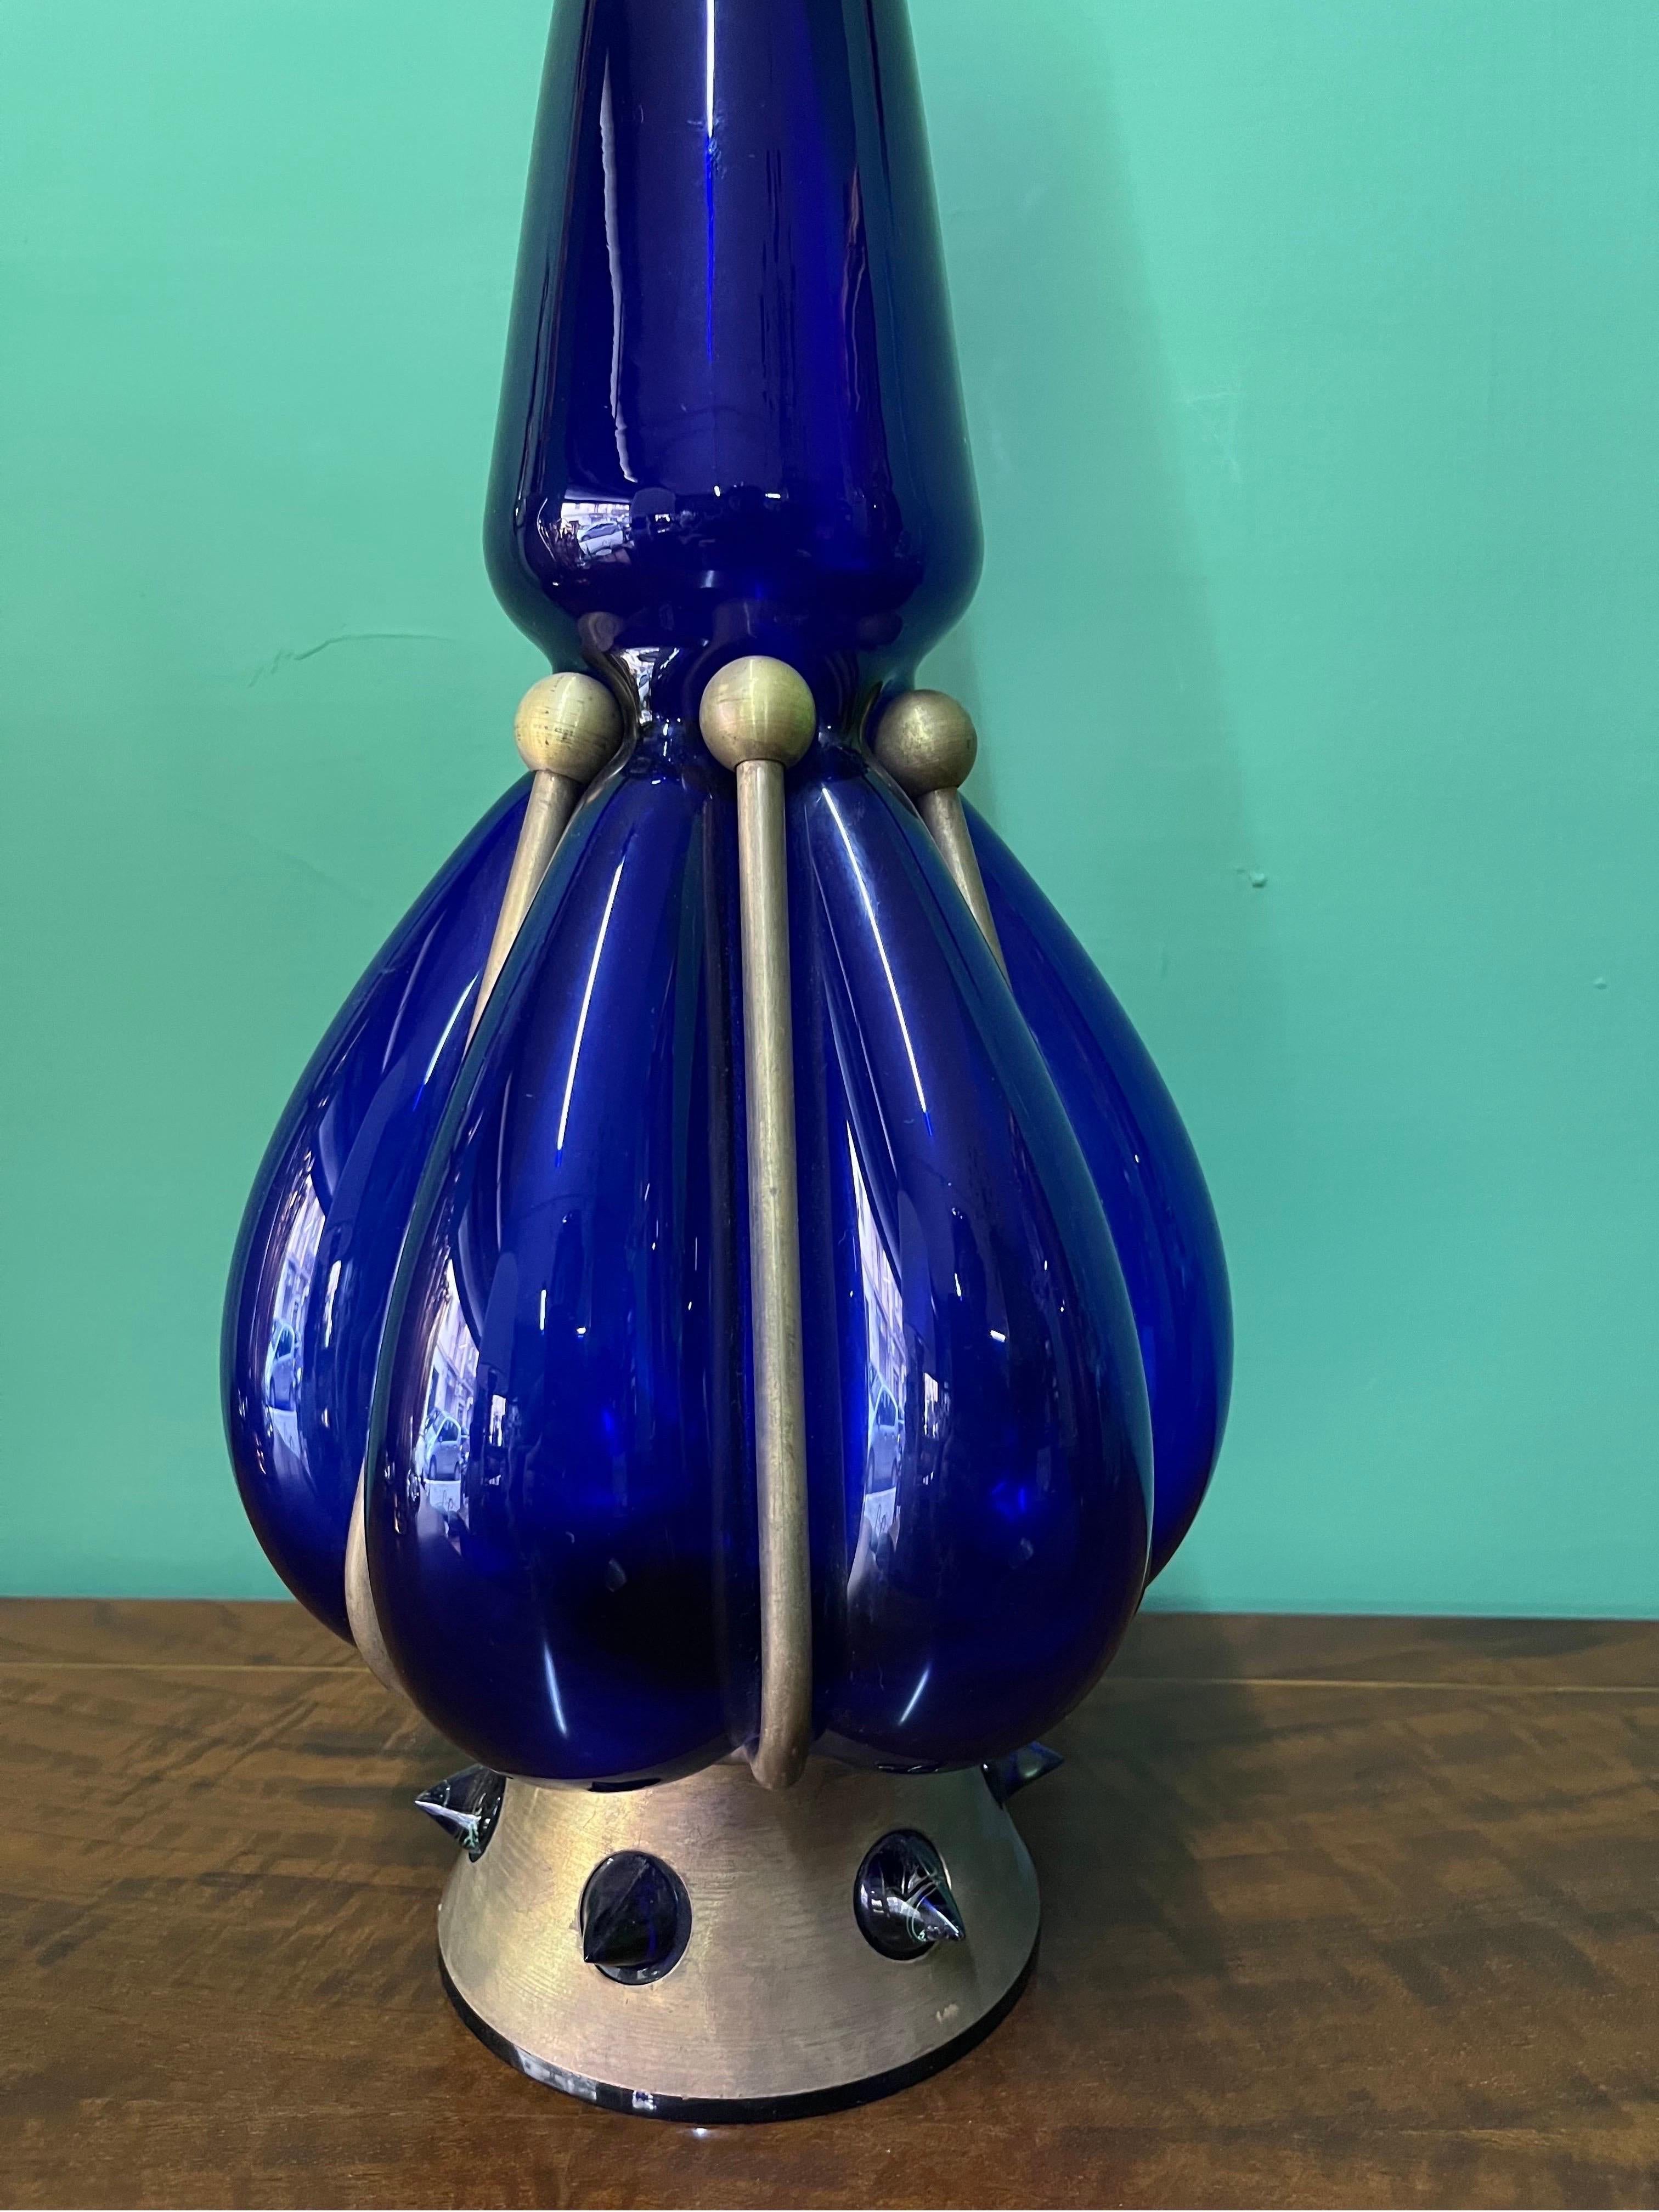 Vintage Blau Skulptur Vase 1980er Jahre

Perfekter Condit 

Sehr schön und ideal als Weihnachtsgeschenk

Maßnahmen

Cm 55 h x 20 Durchmesser x cm
12 Basis.